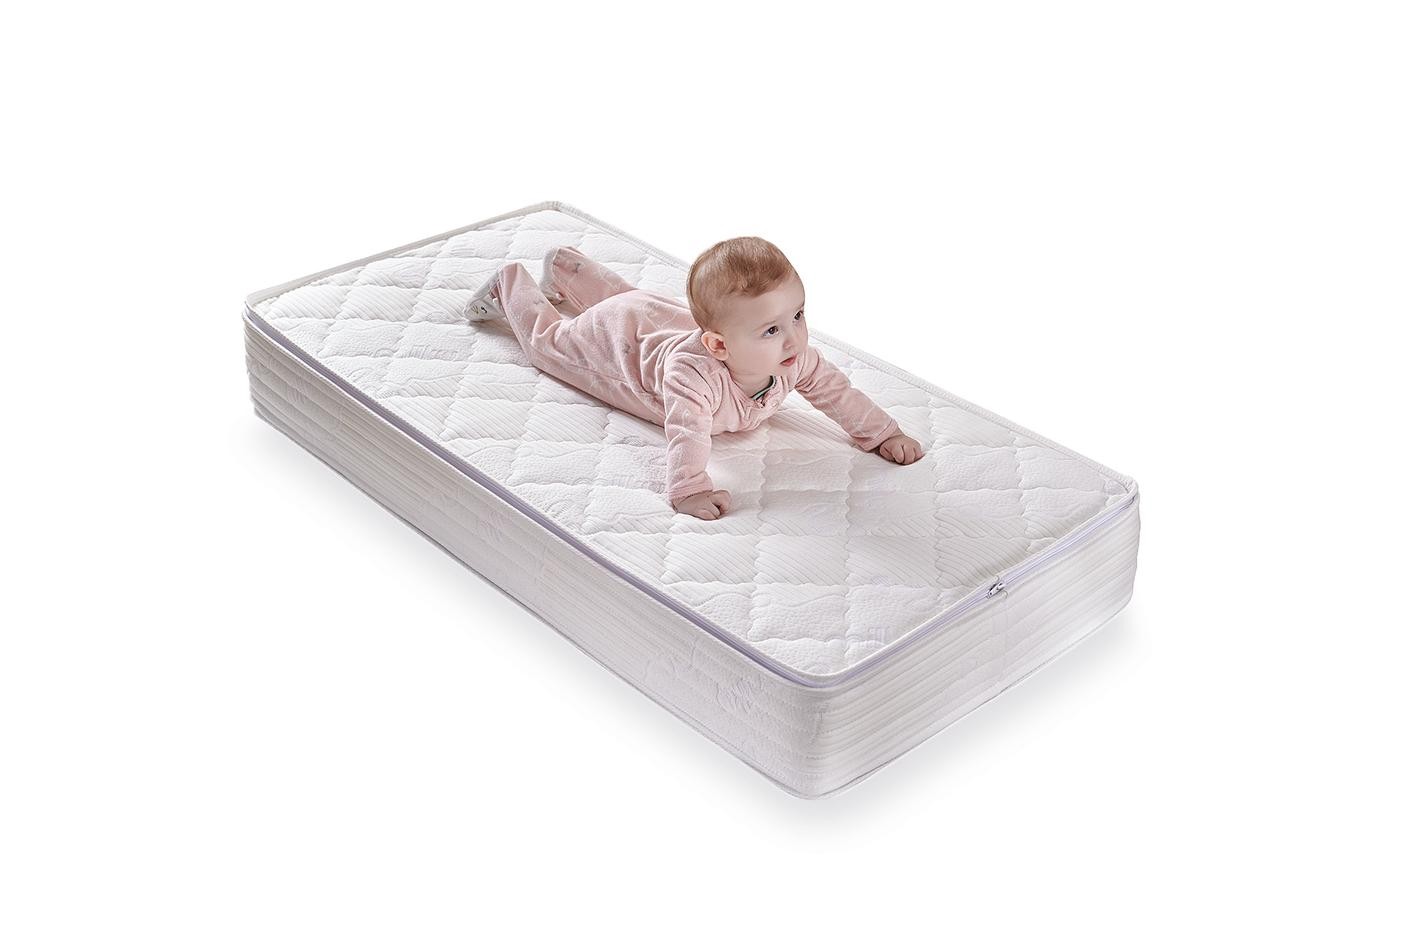 Enza Home Milky Comfy DHT, Yıkanabilir Pedli Bebek Yatağı, 060x120 cm 6